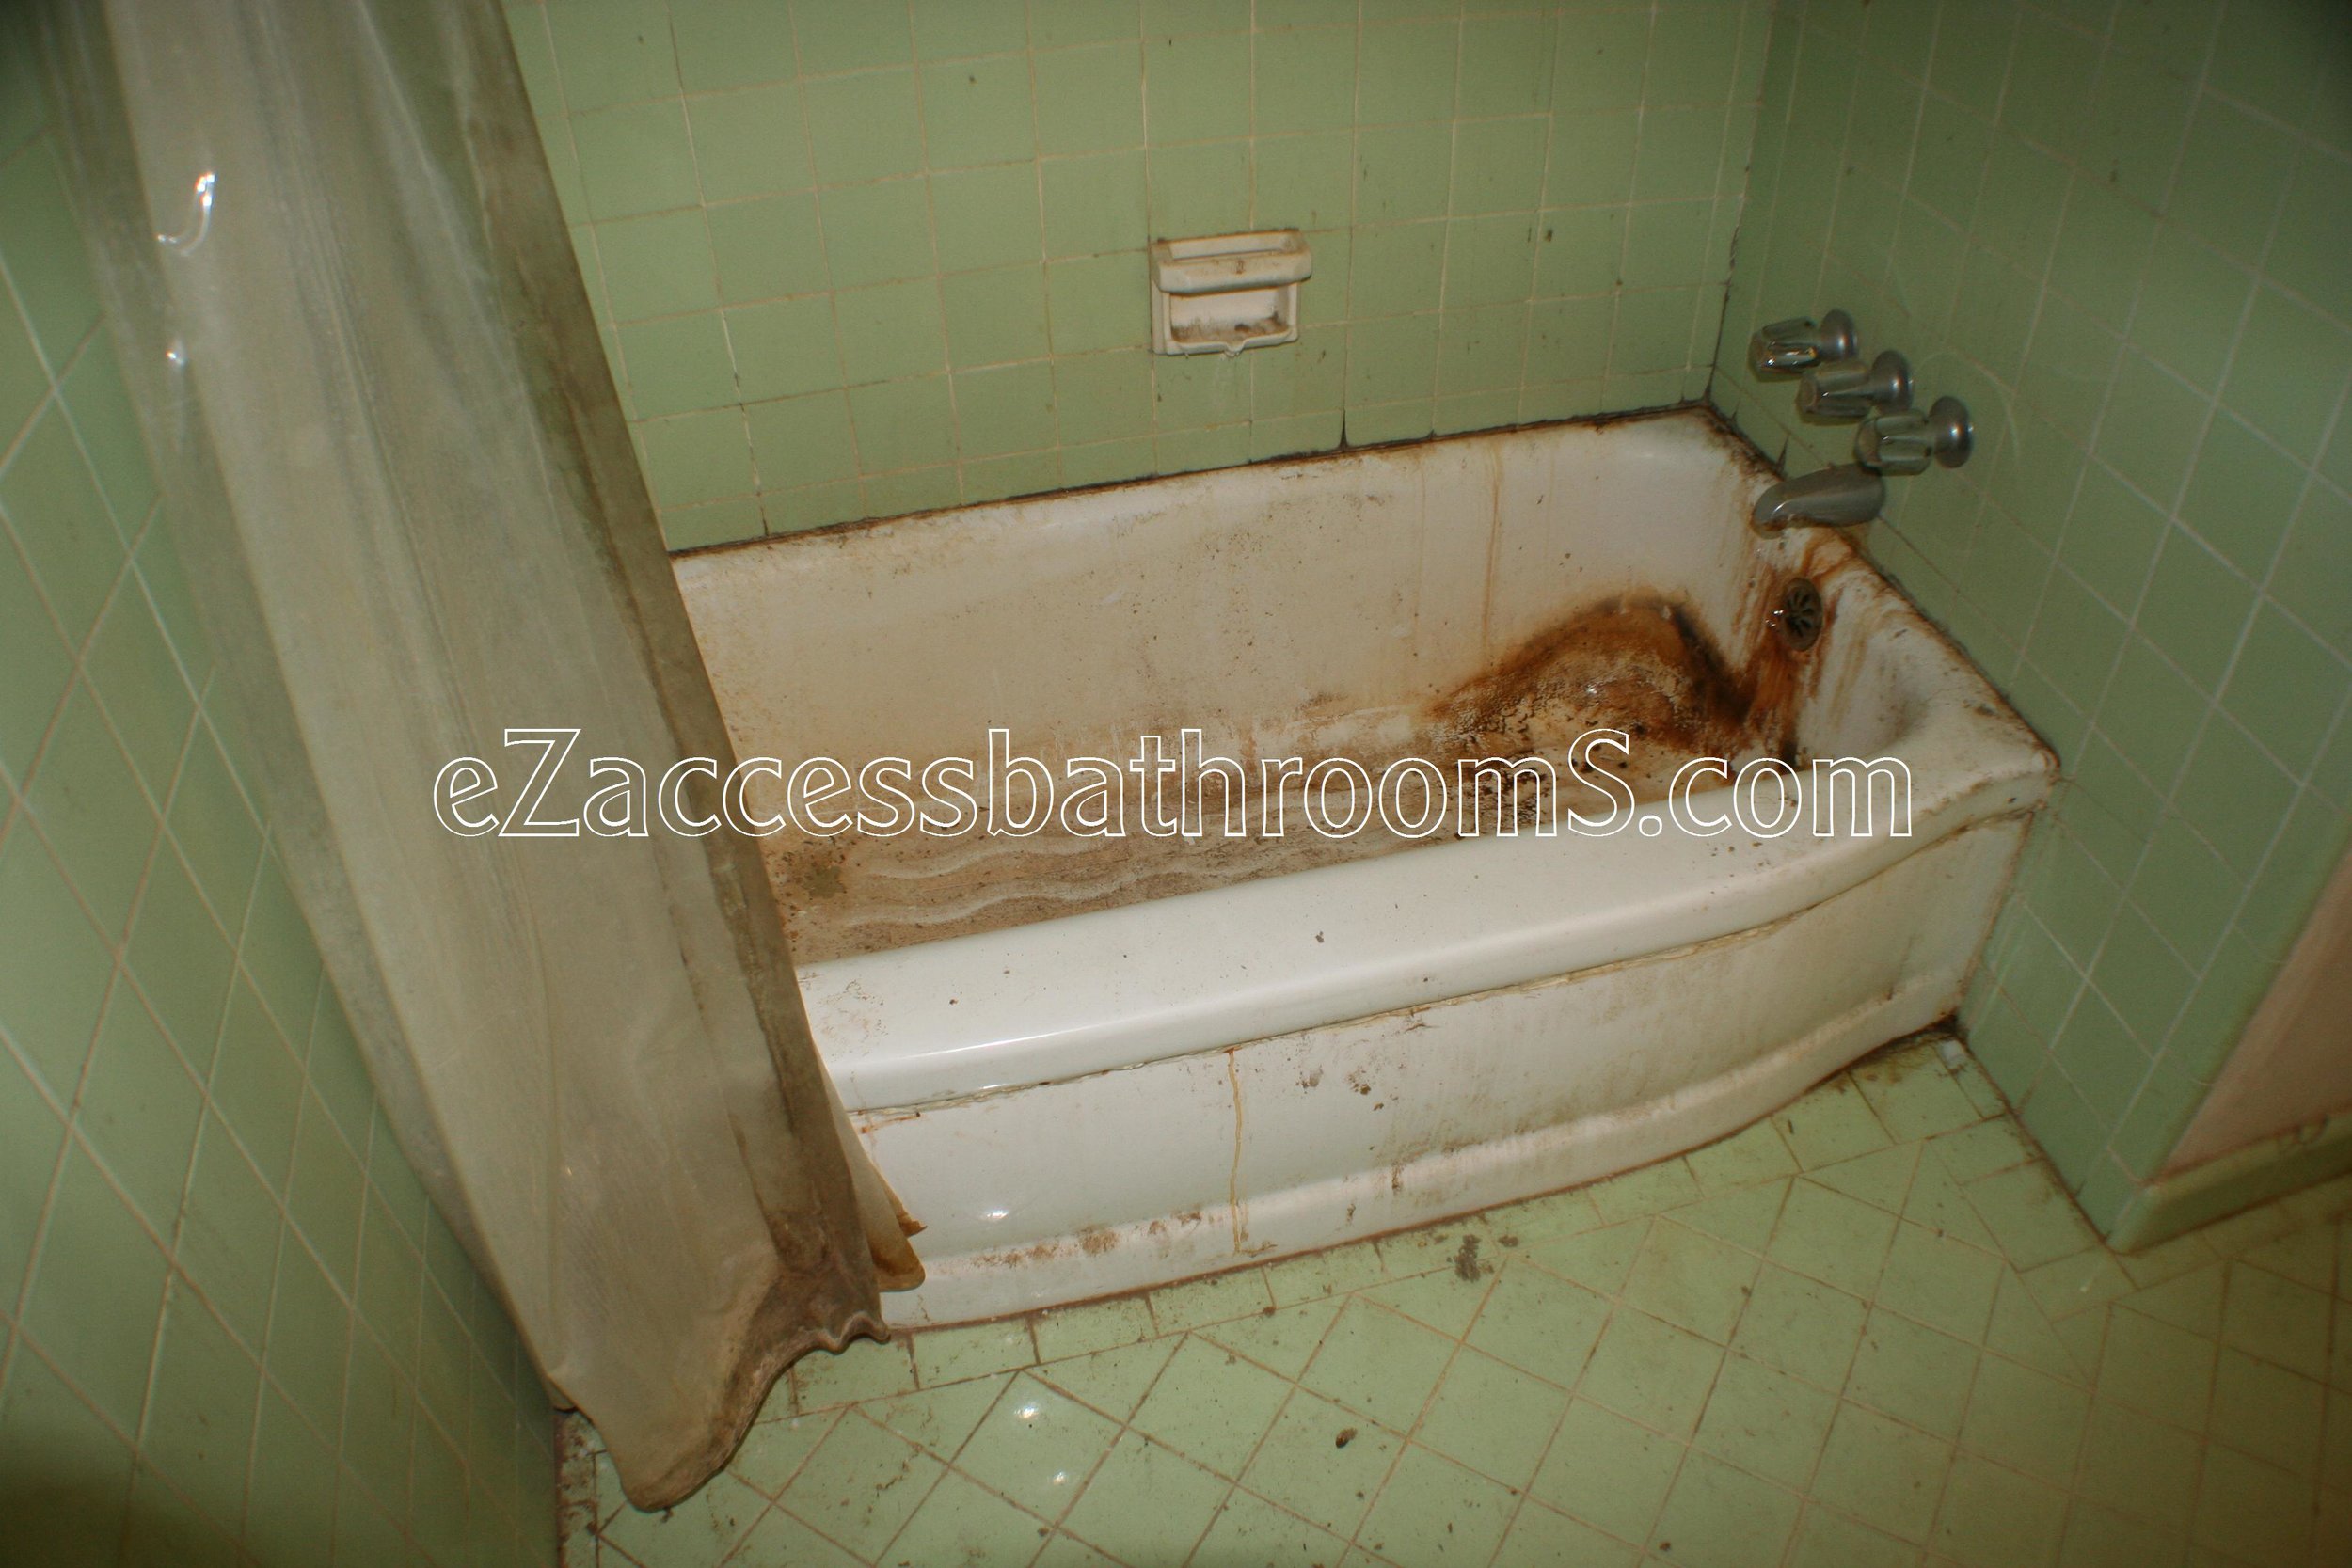 rollin shower ezaccessbathrooms.com 0015.JPG